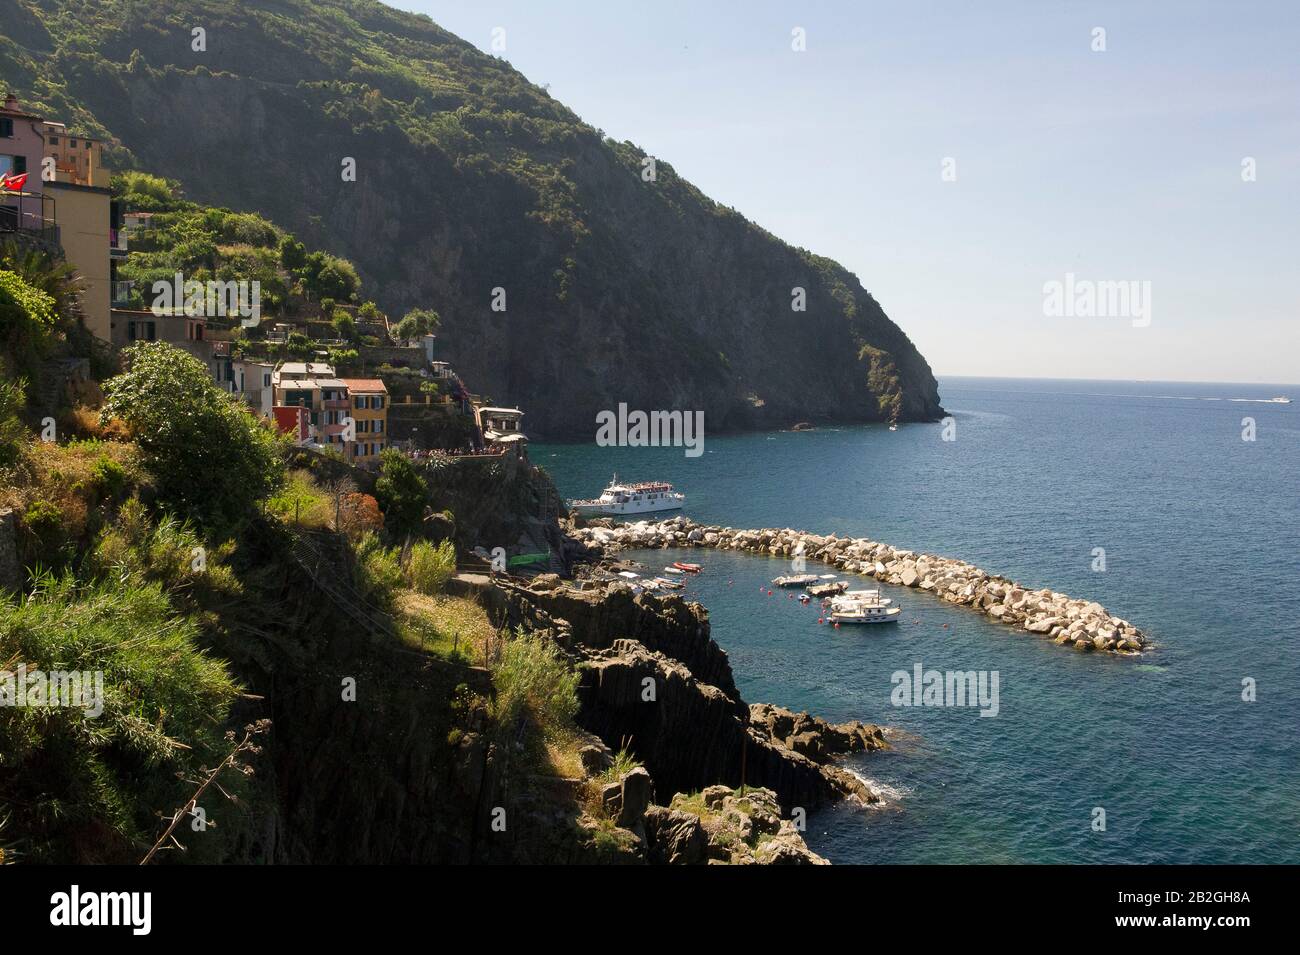 Riomaggiore si affaccia sul mare in provincia di la Spezia, si trova nel parco naturale delle cinque Terre in Liguria, nel nord-ovest dell'Italia. E 'sulla lista del patrimonio mondiale dell'UNESCO Foto Stock